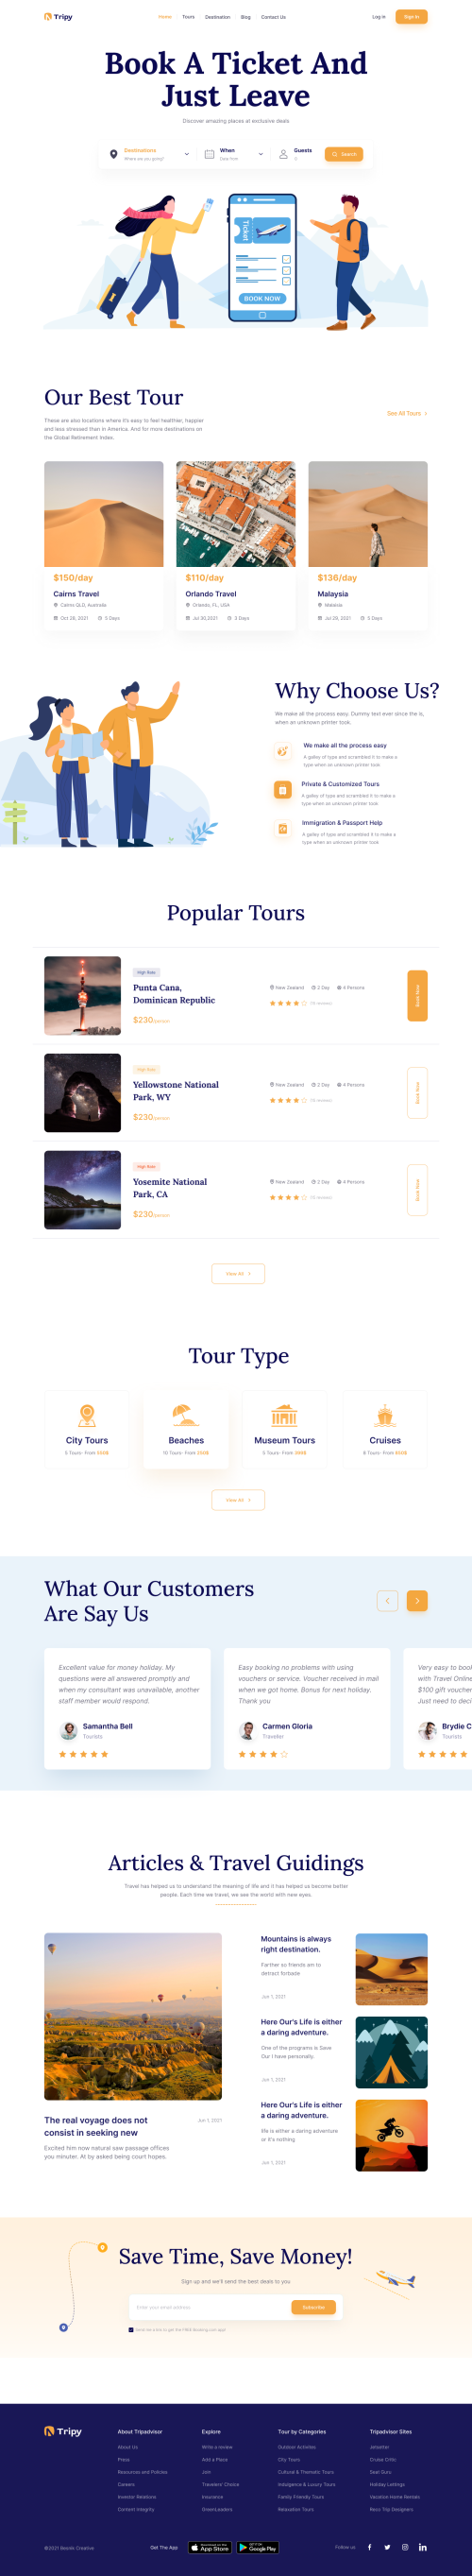 UIHut - Tripy Travel Booking Landing Page - 12143